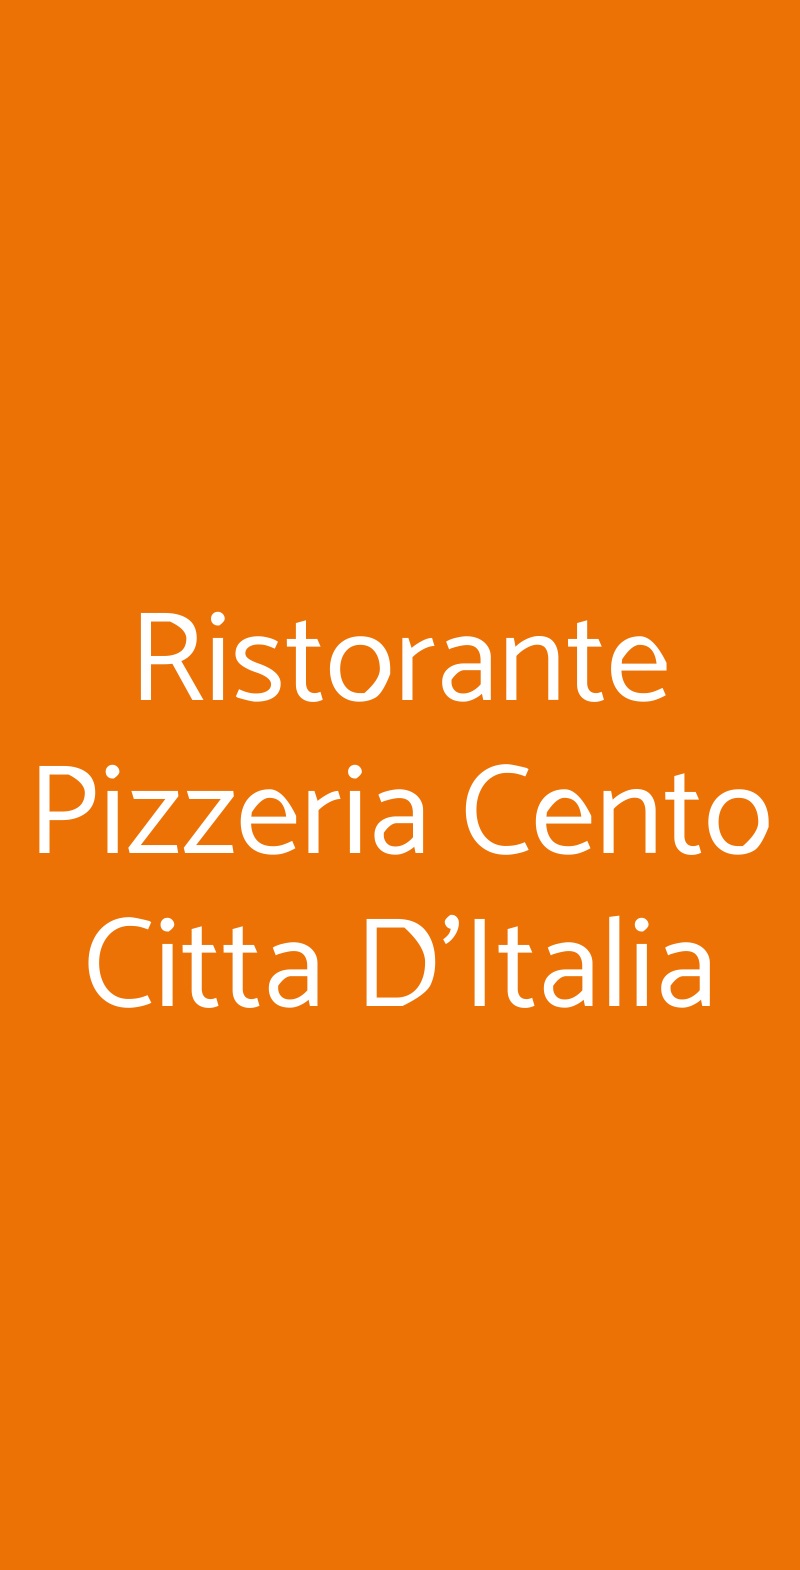 Ristorante Pizzeria Cento Citta D'Italia Padova menù 1 pagina